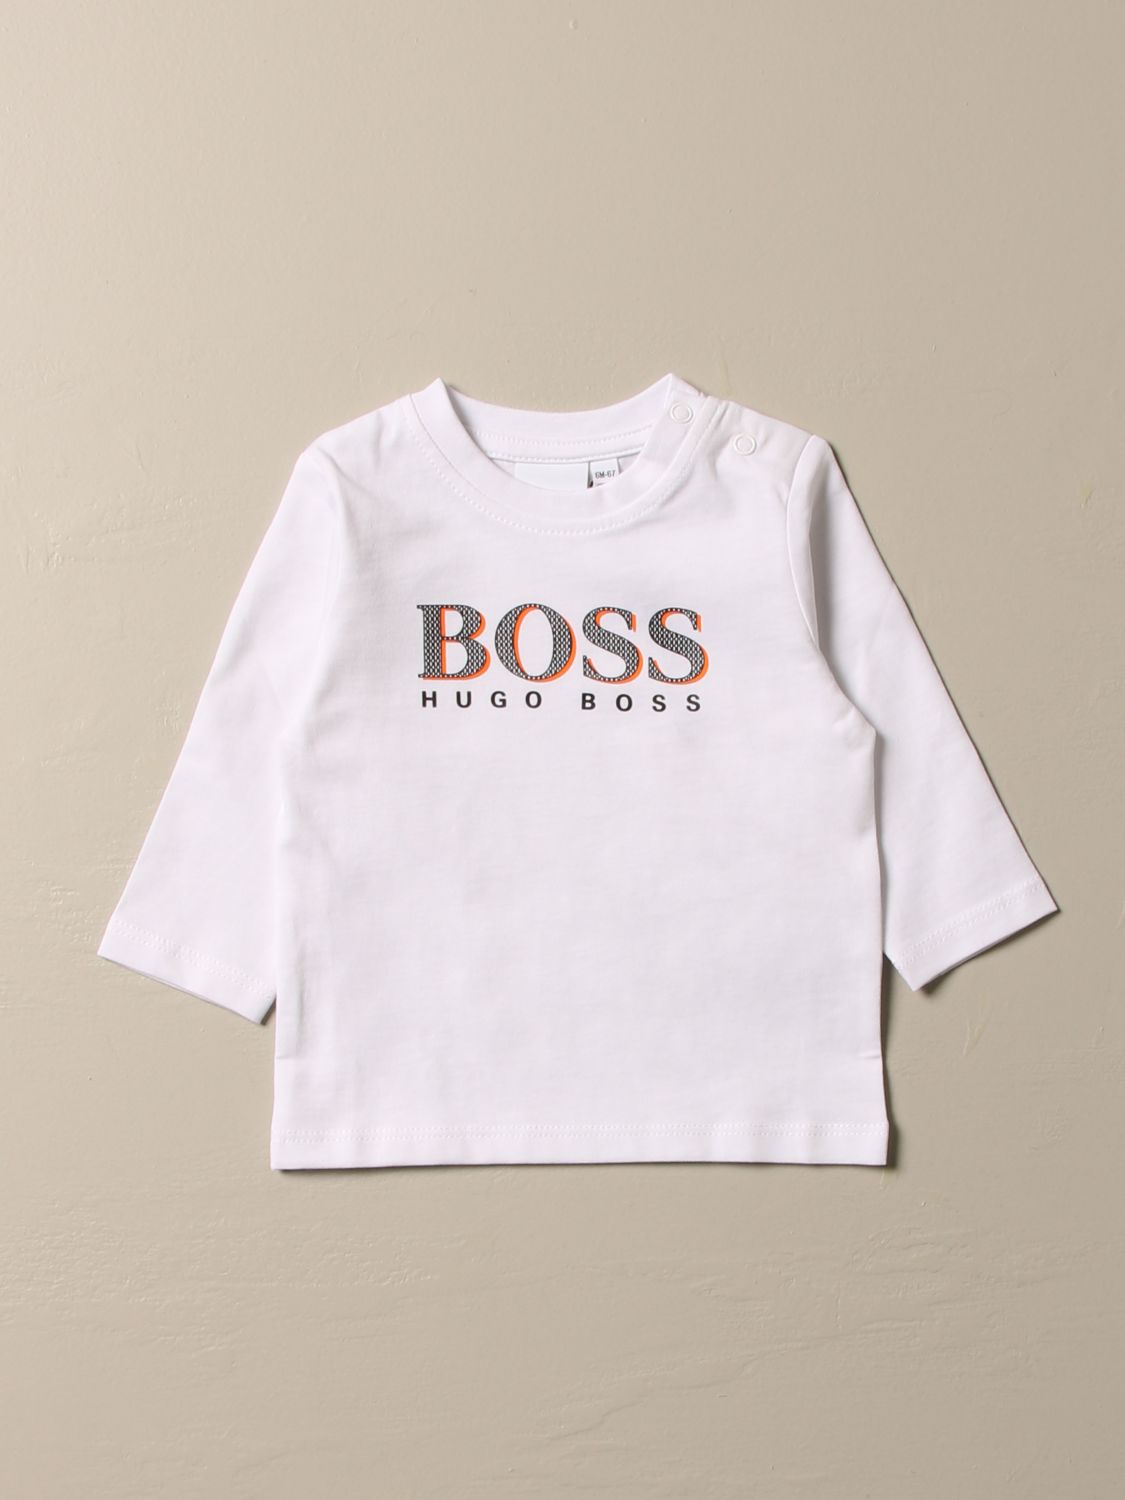 boss kids tshirt